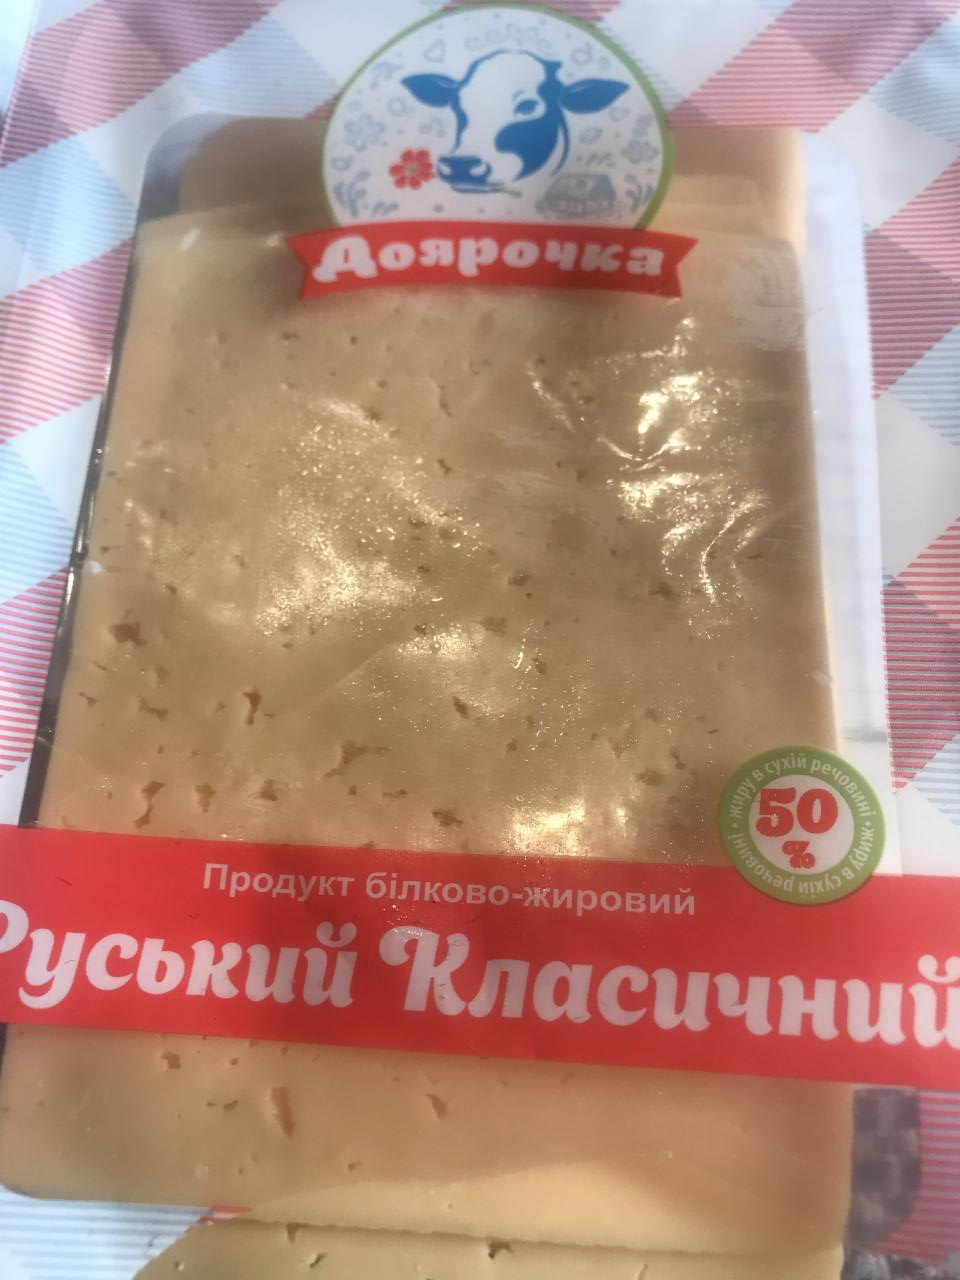 Фото - Продукт білково-жировий 50% Російський Класичний Доярочка